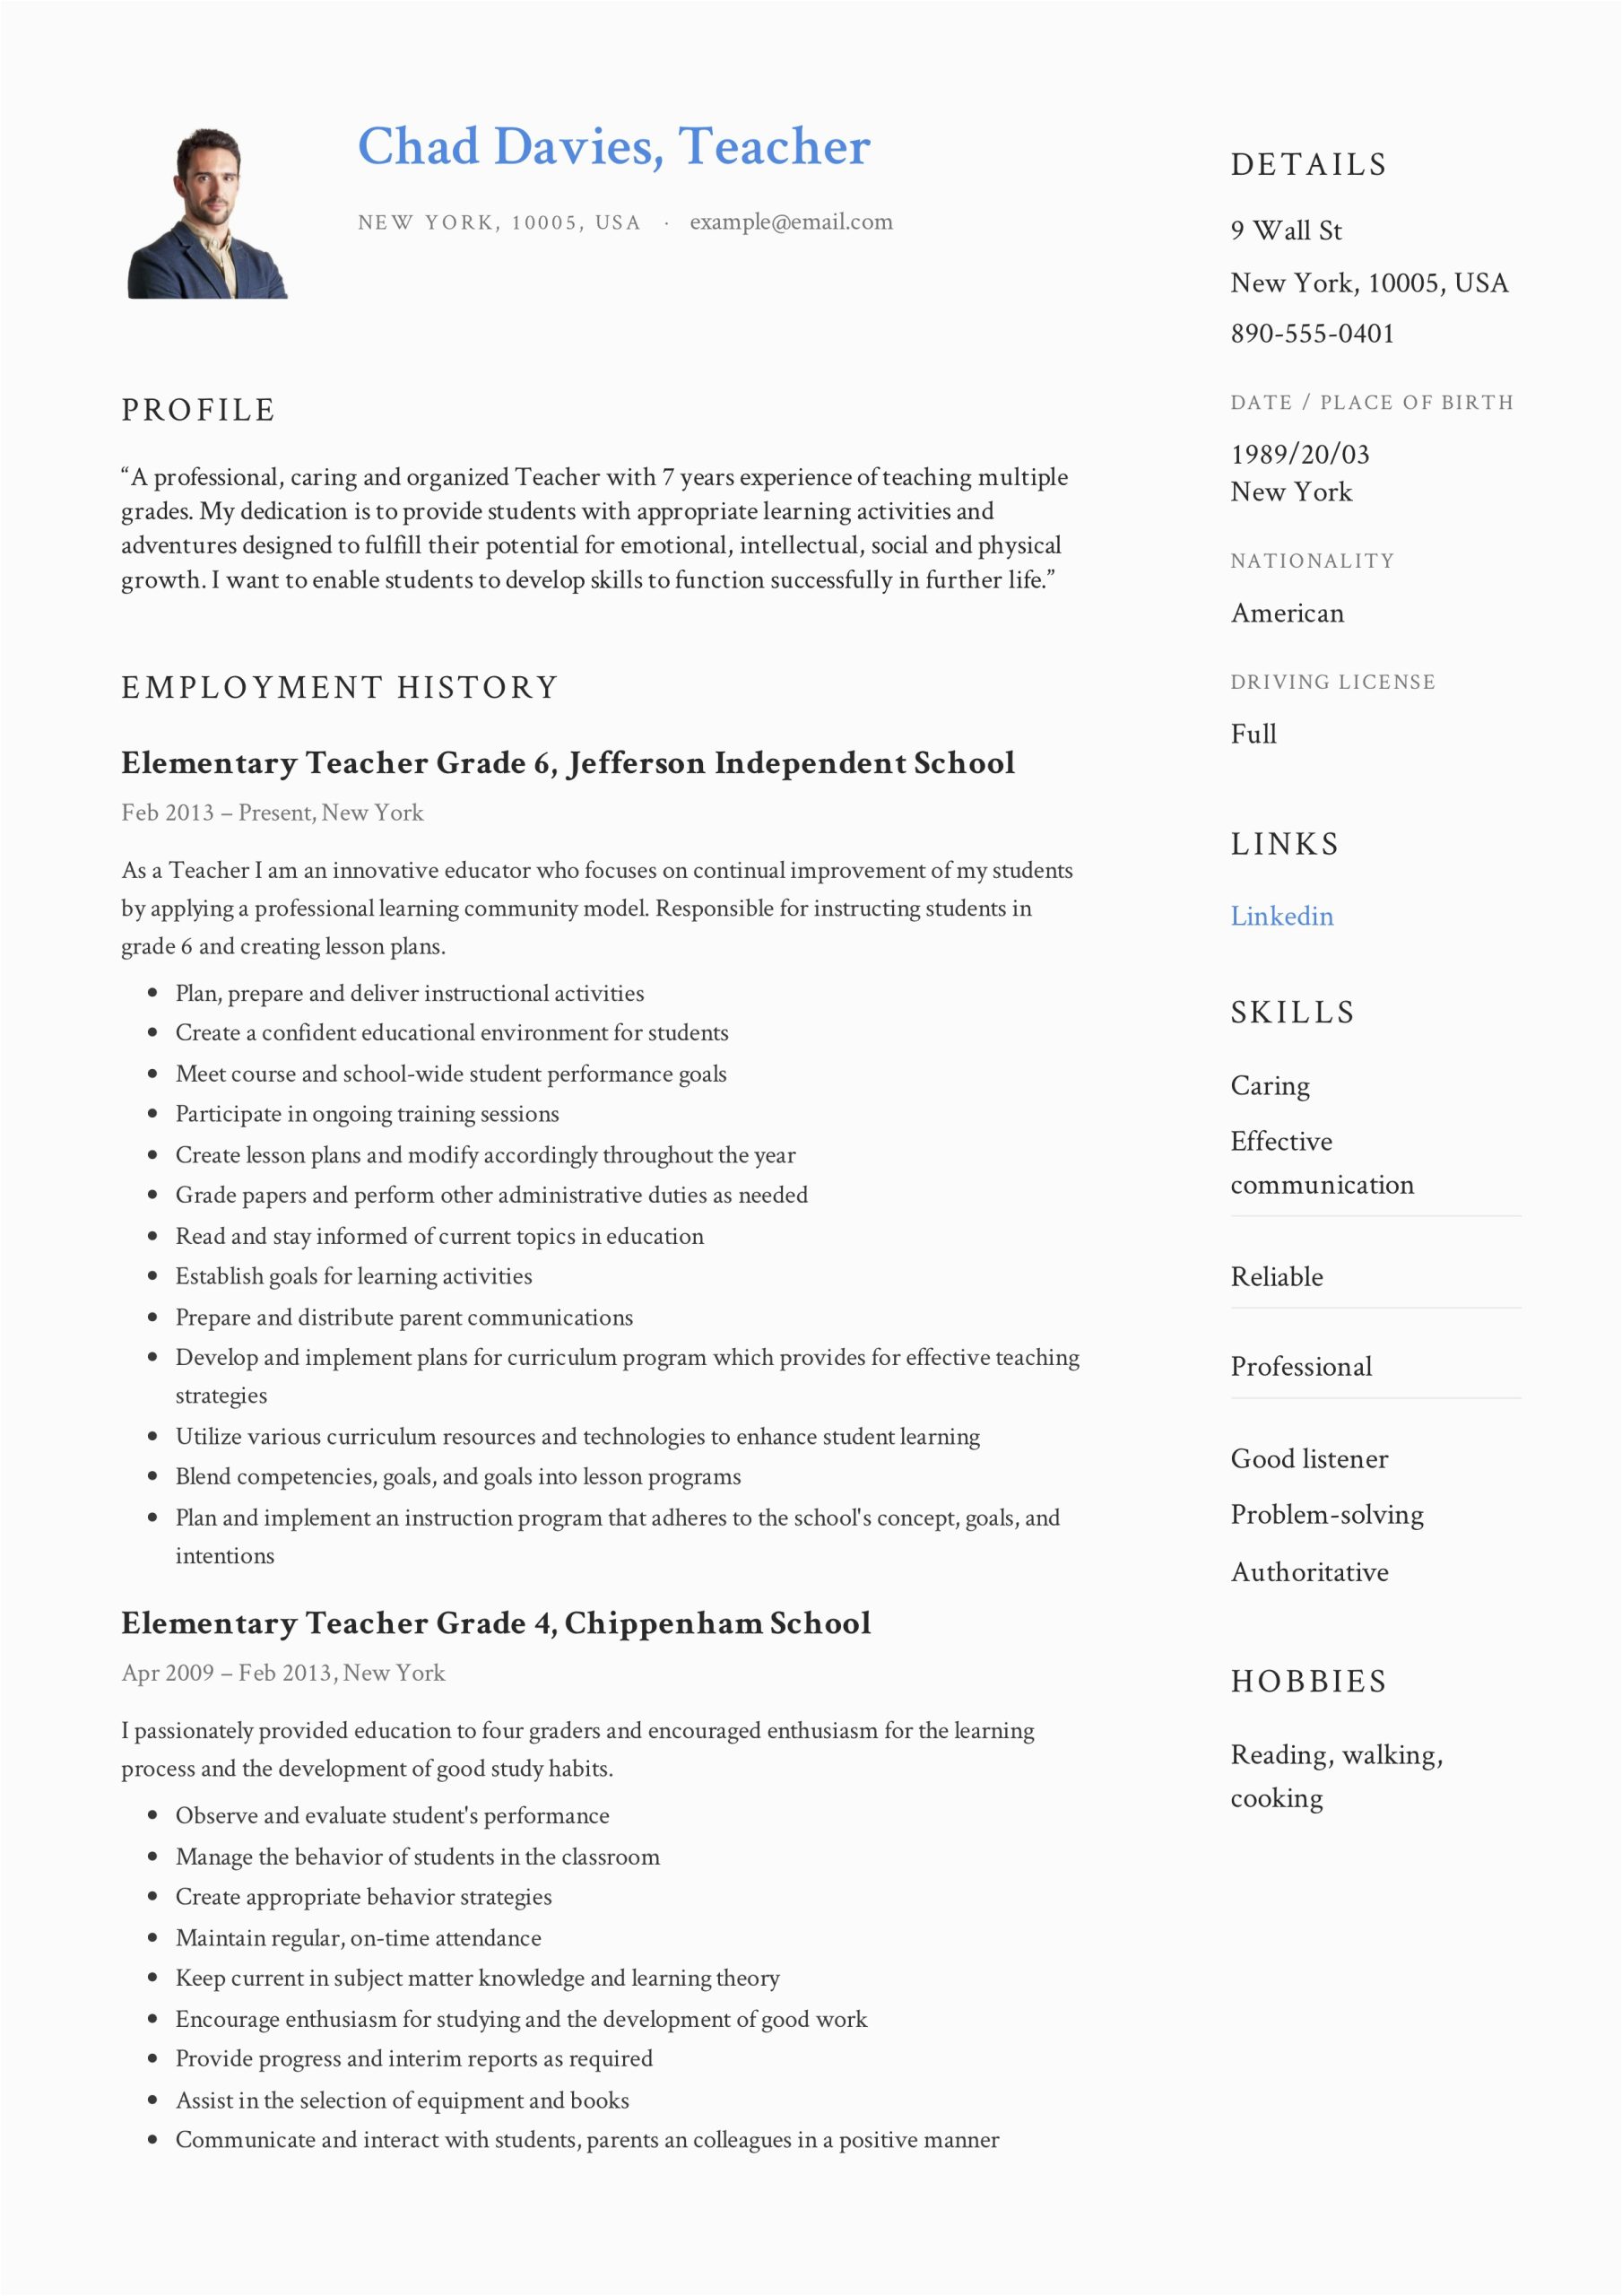 Sample Resume Of An Elementary Teacher Teacher Resume & Writing Guide 12 Samples Pdf